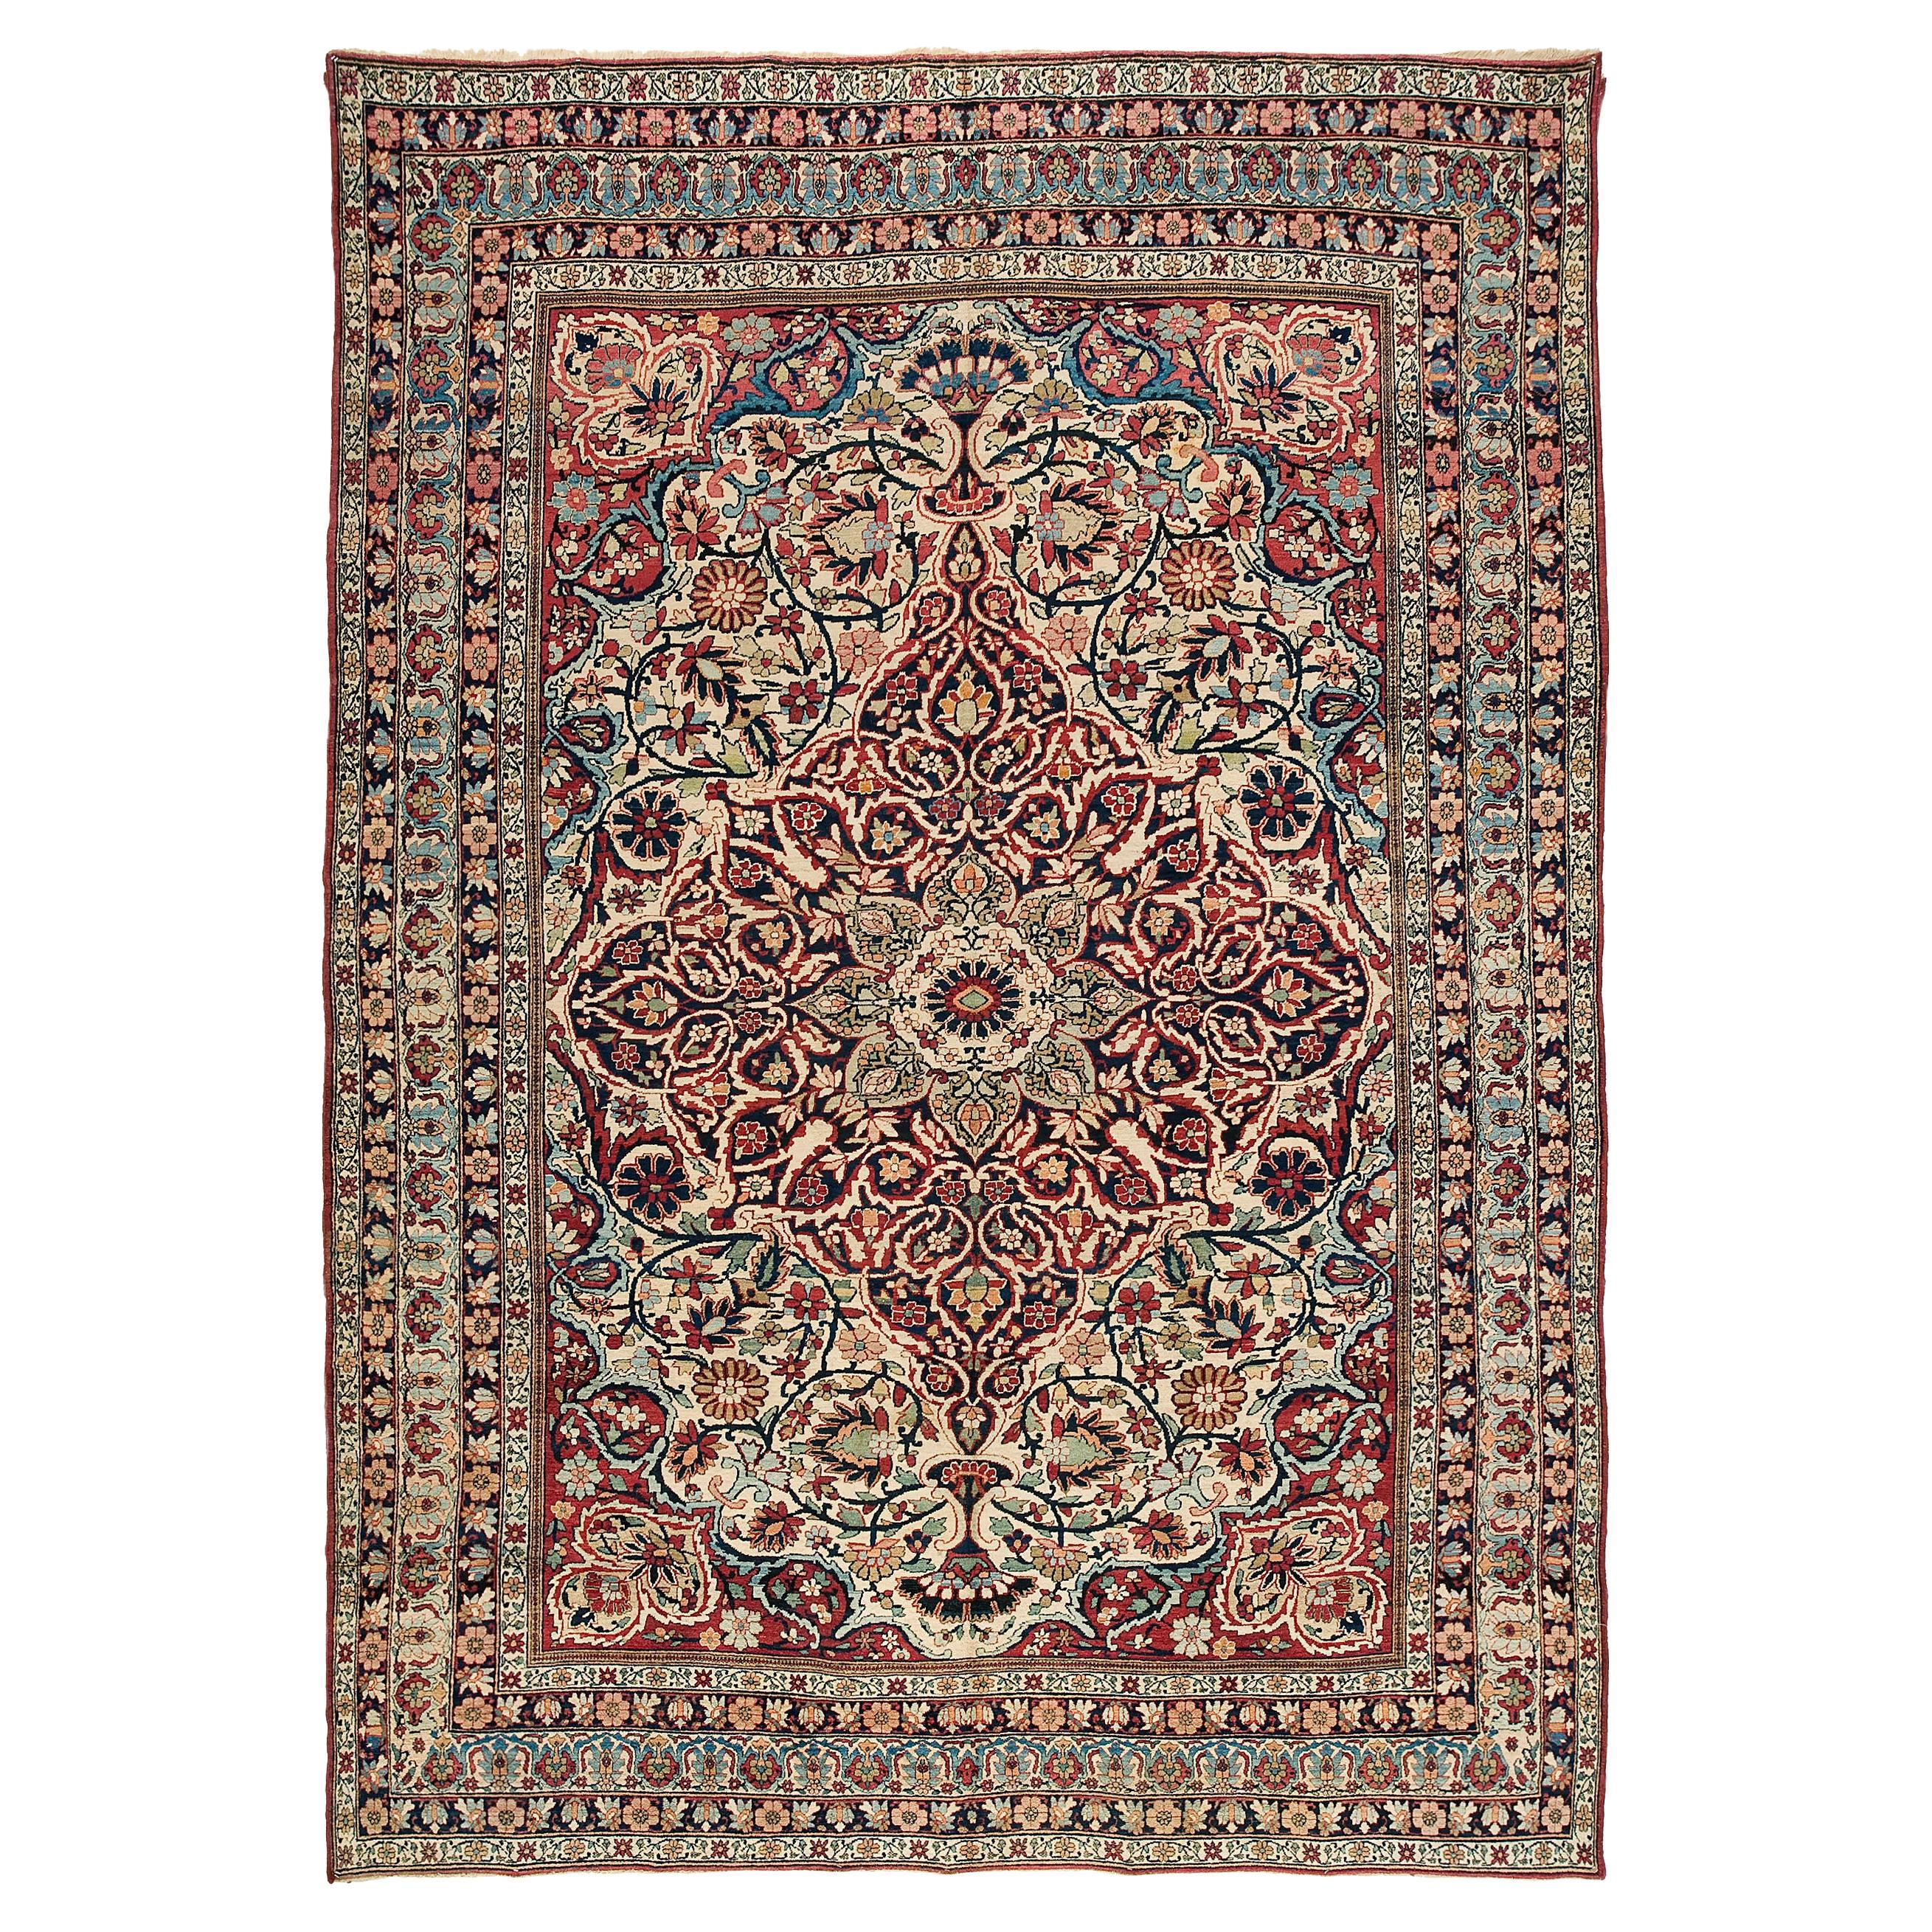 Lavar Kerman-Teppich aus dem späten 19. Jahrhundert